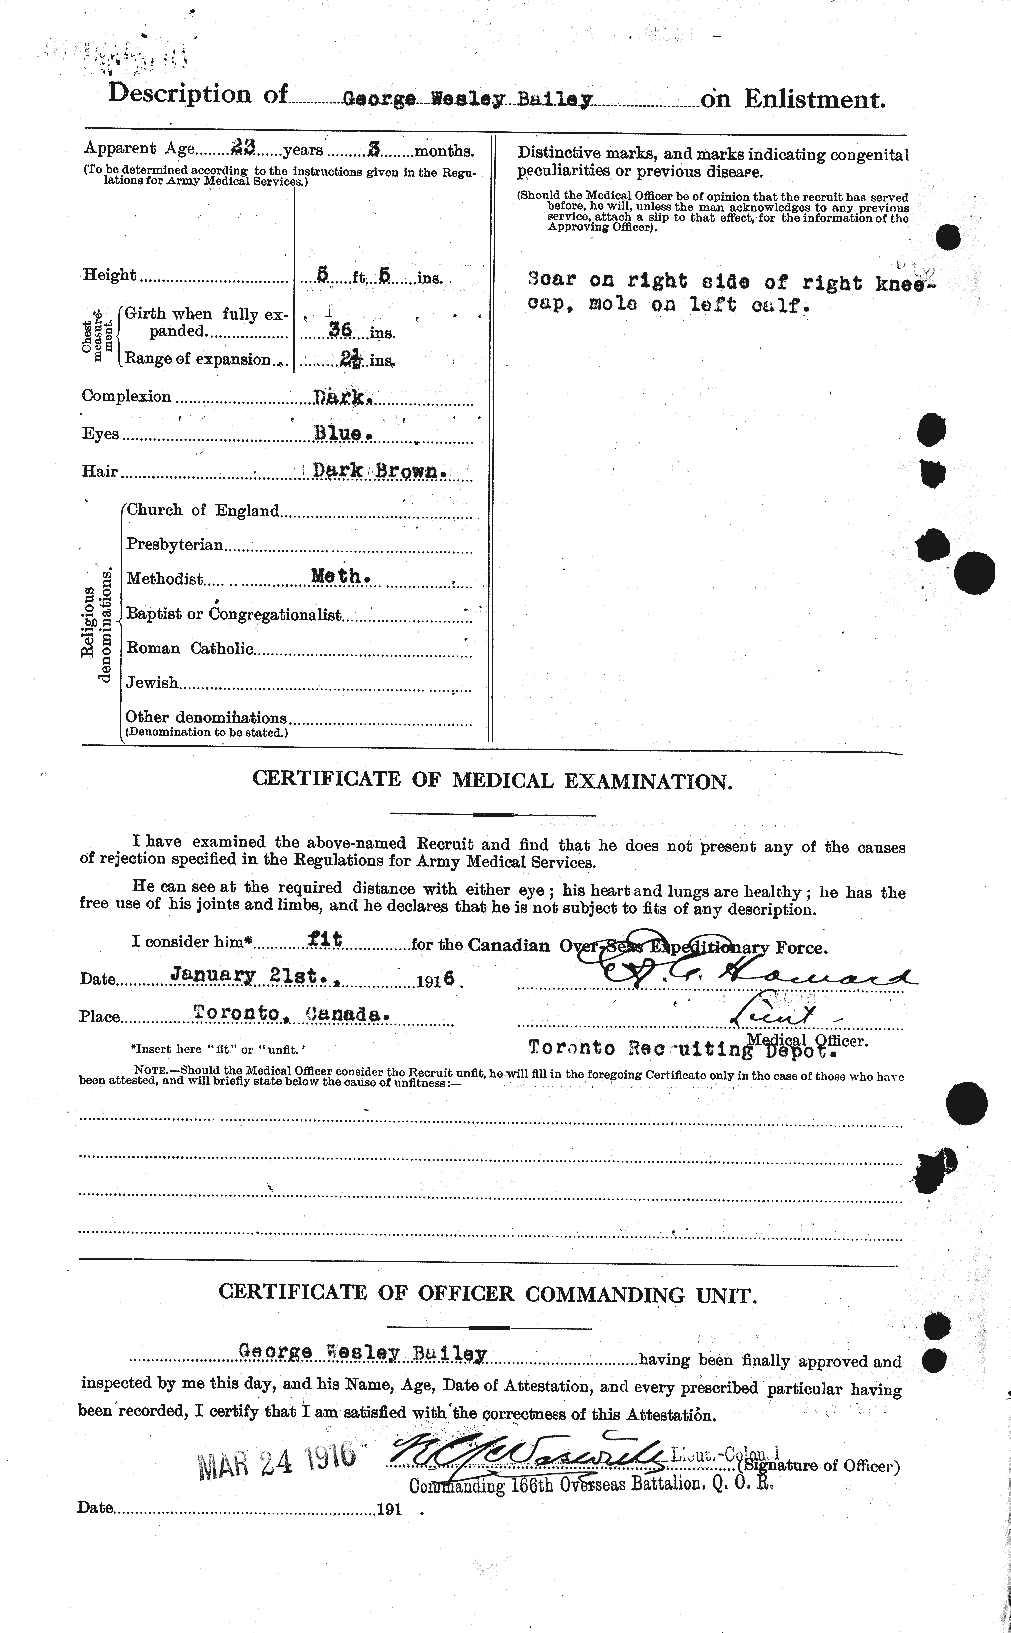 Dossiers du Personnel de la Première Guerre mondiale - CEC 218938b